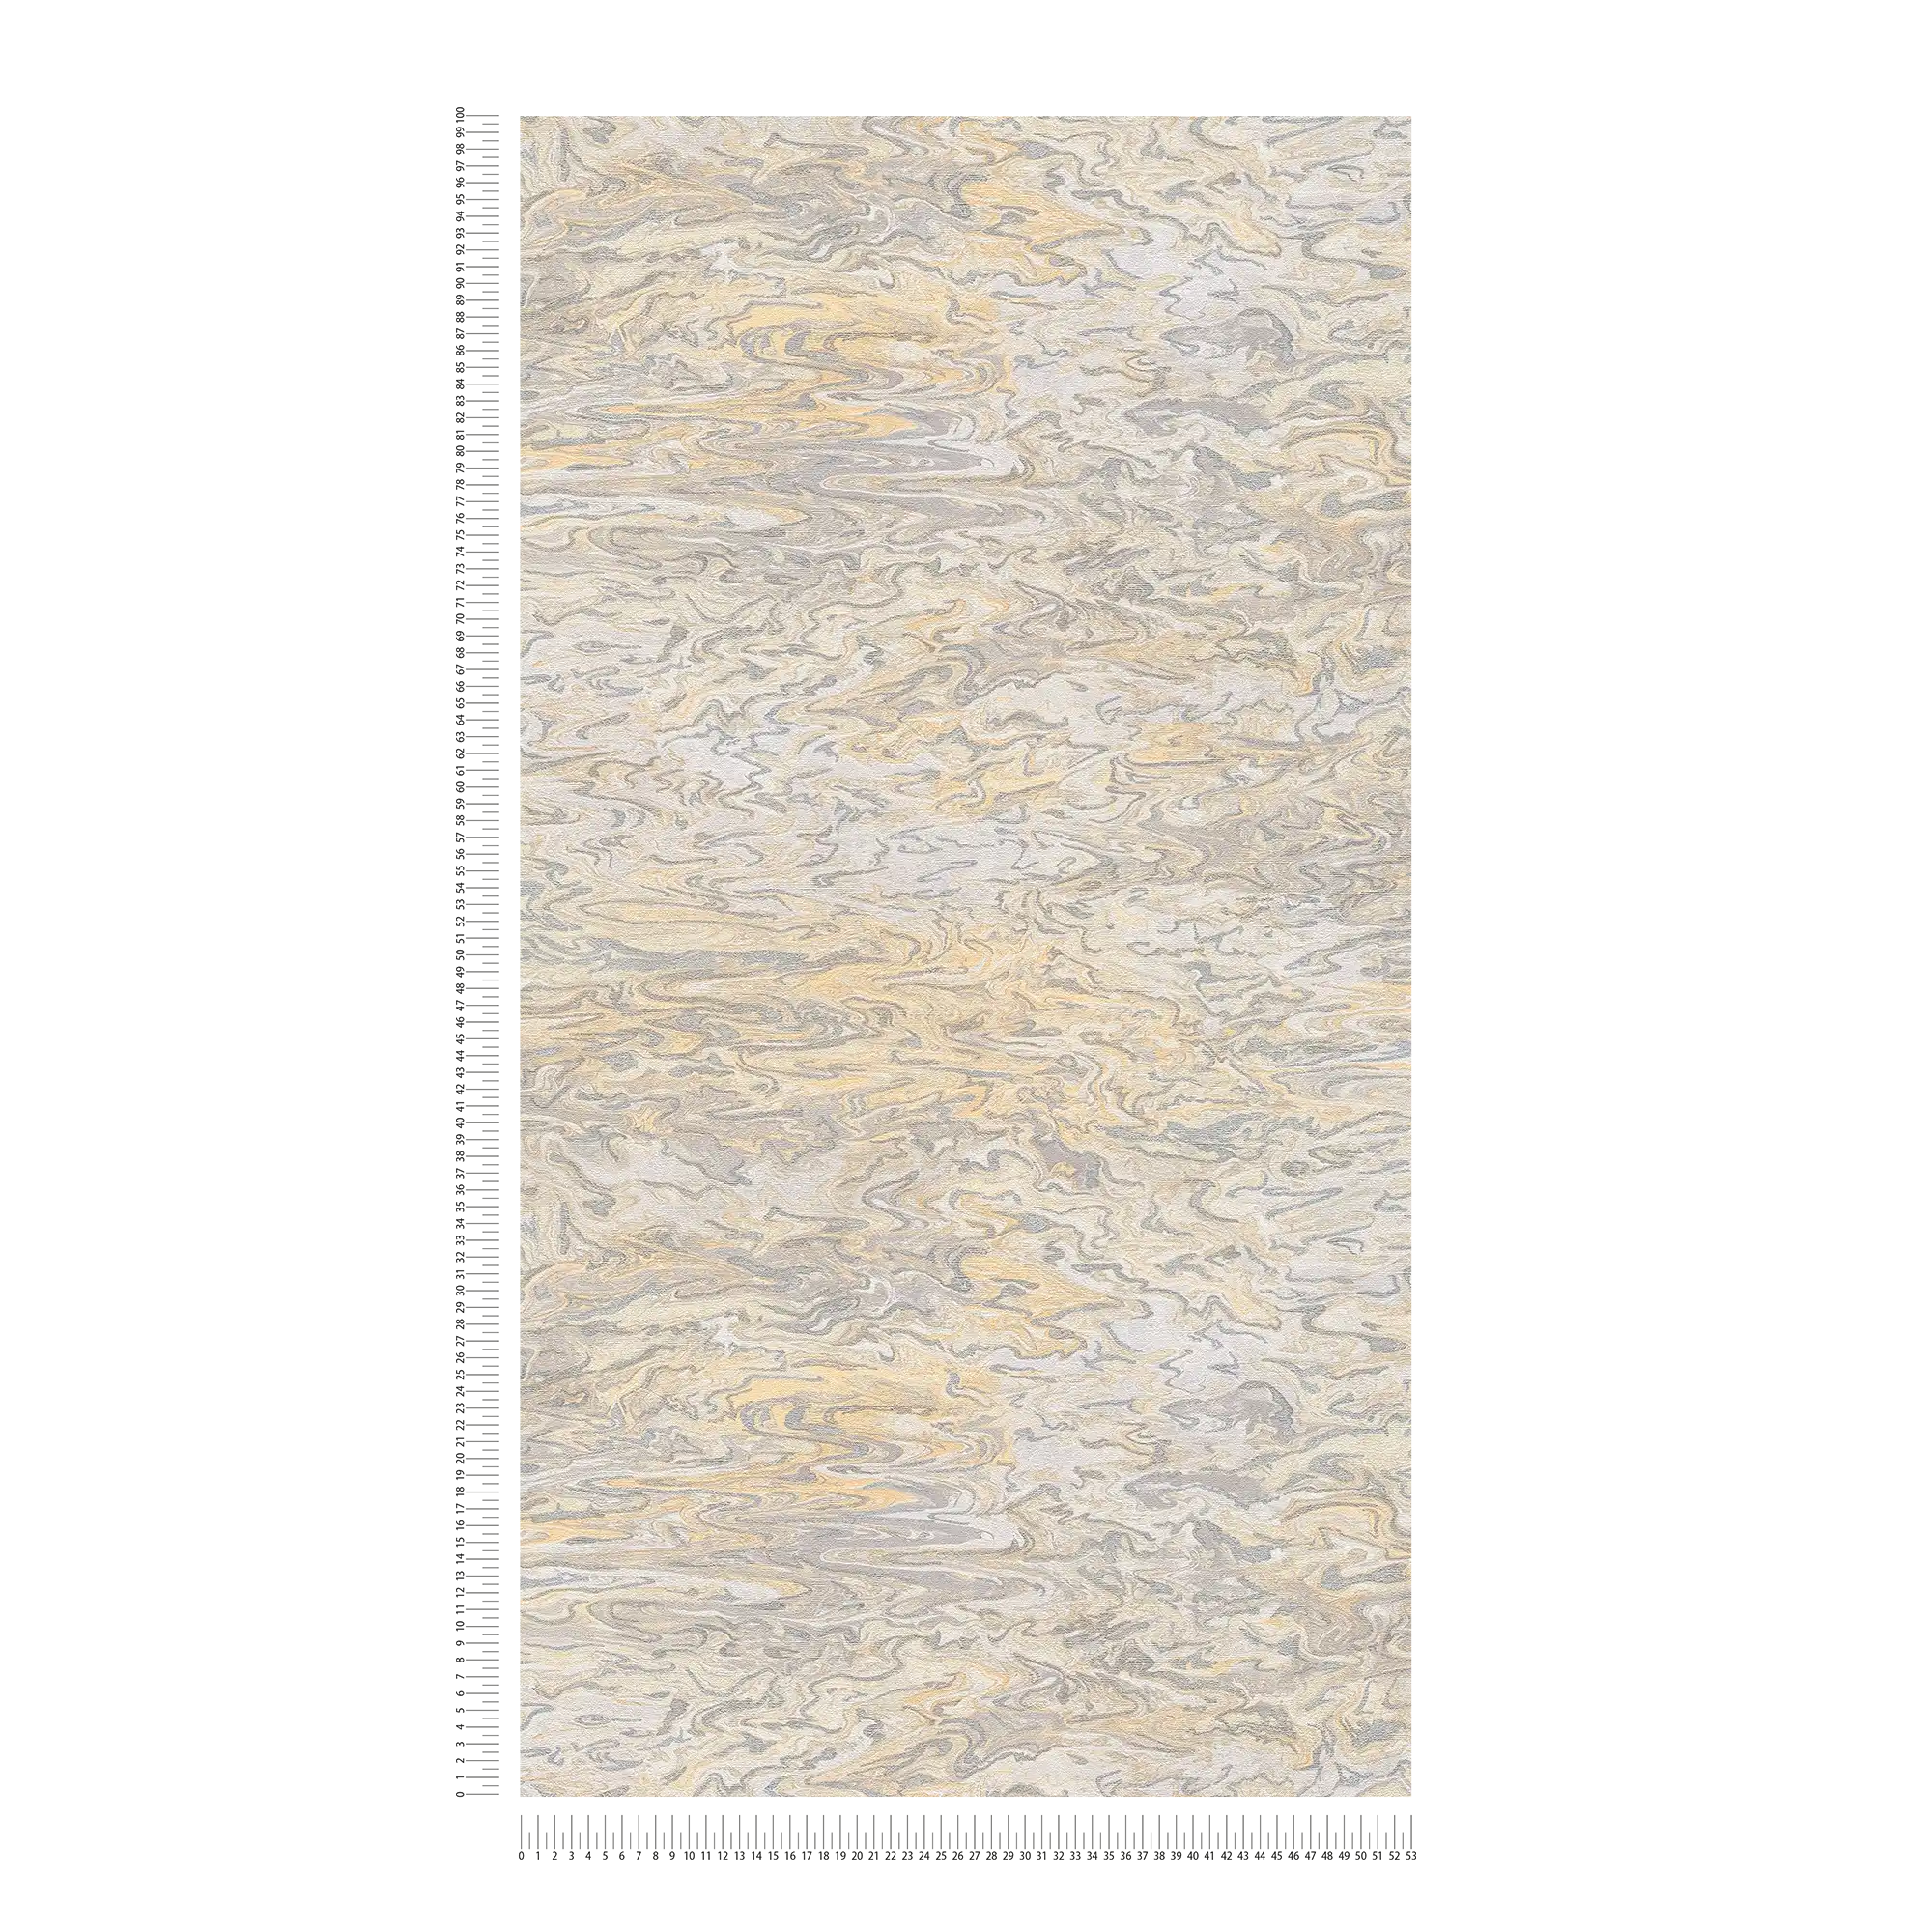             Papier peint marbré design abstrait - beige, gris, crème
        